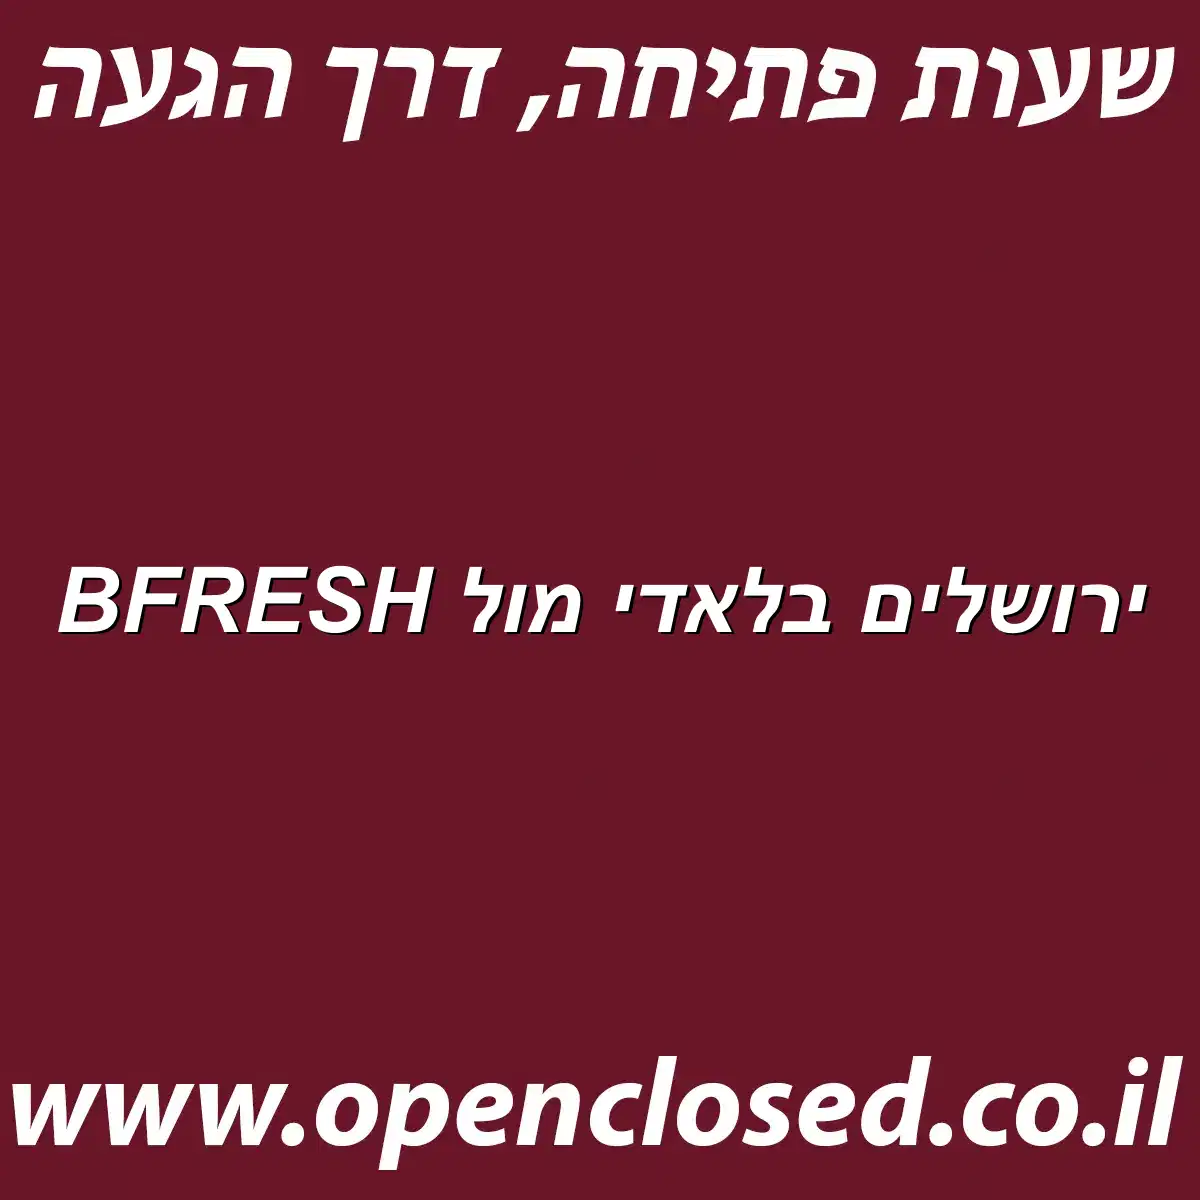 BFRESH ירושלים בלאדי מול